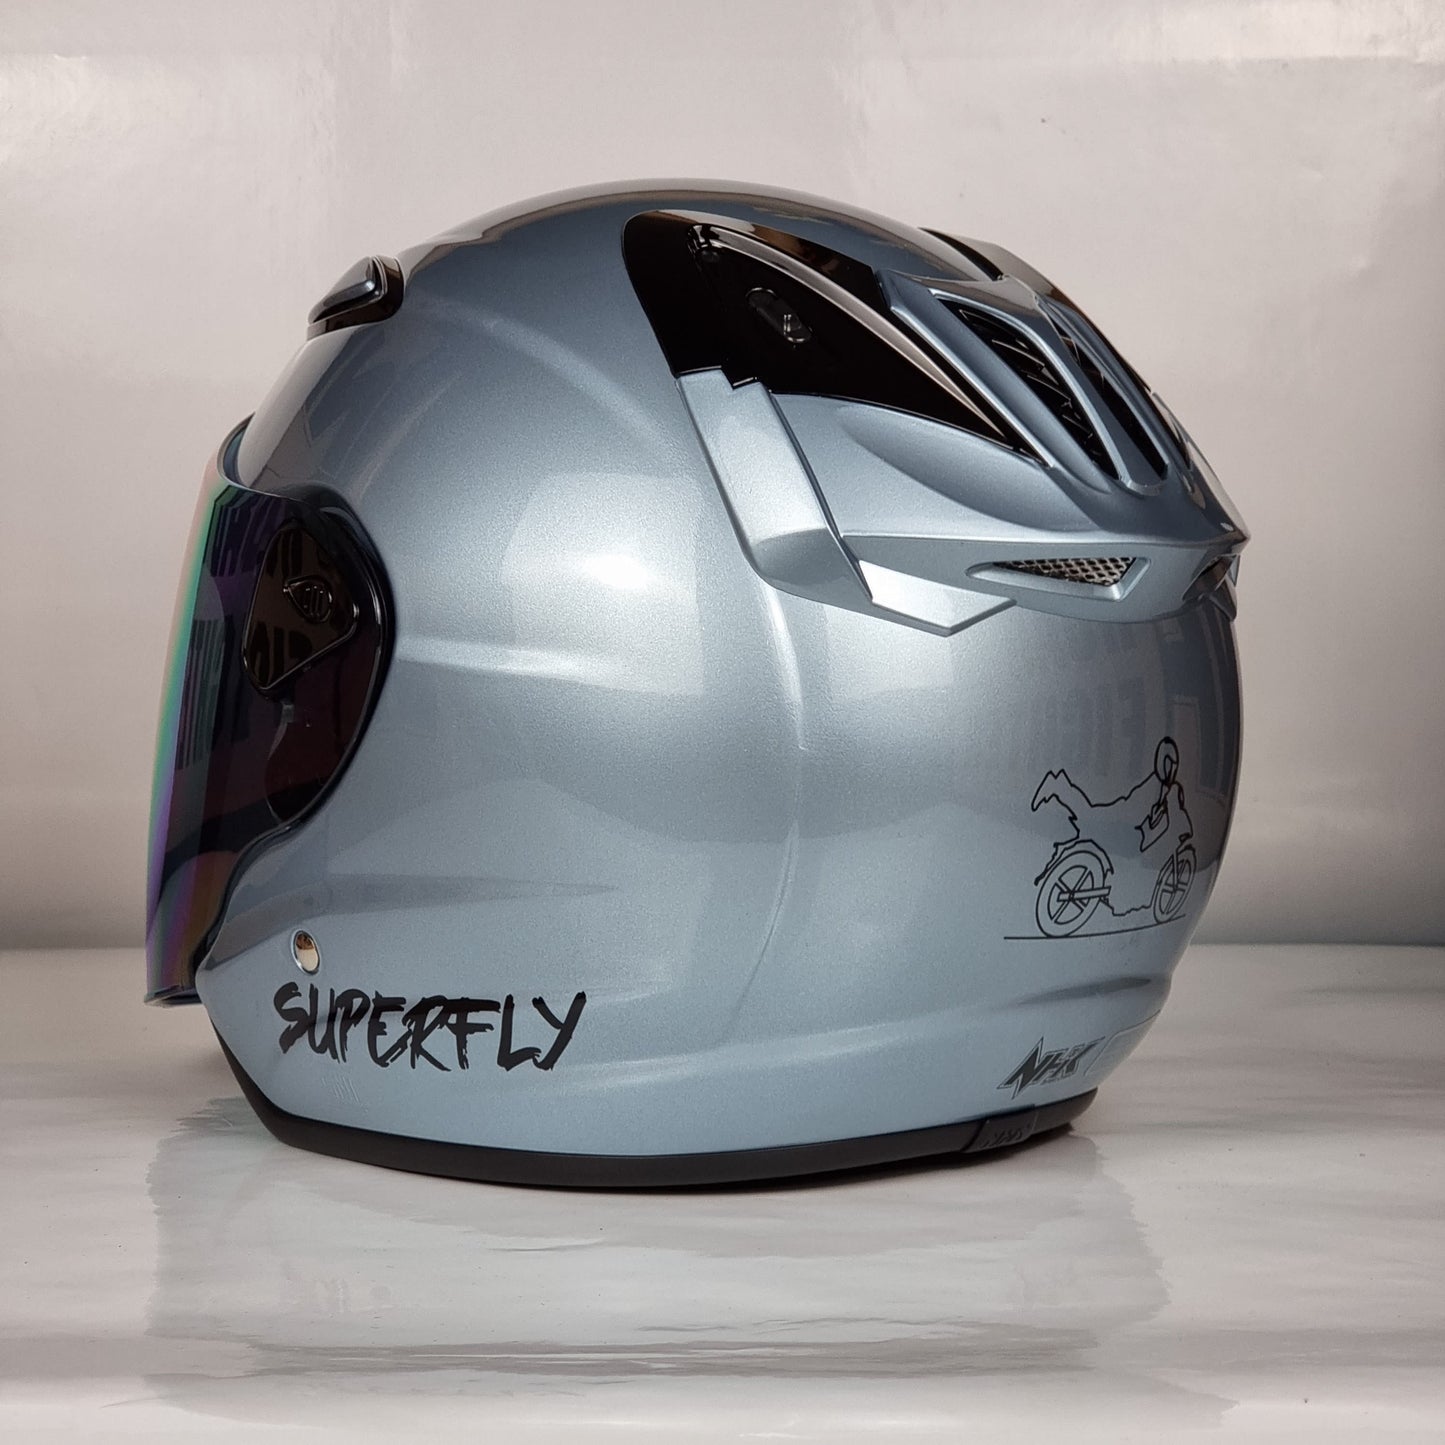 NHK Helmet X SUPERFLY R6 v2 Solid (Zephyr White Glossy)